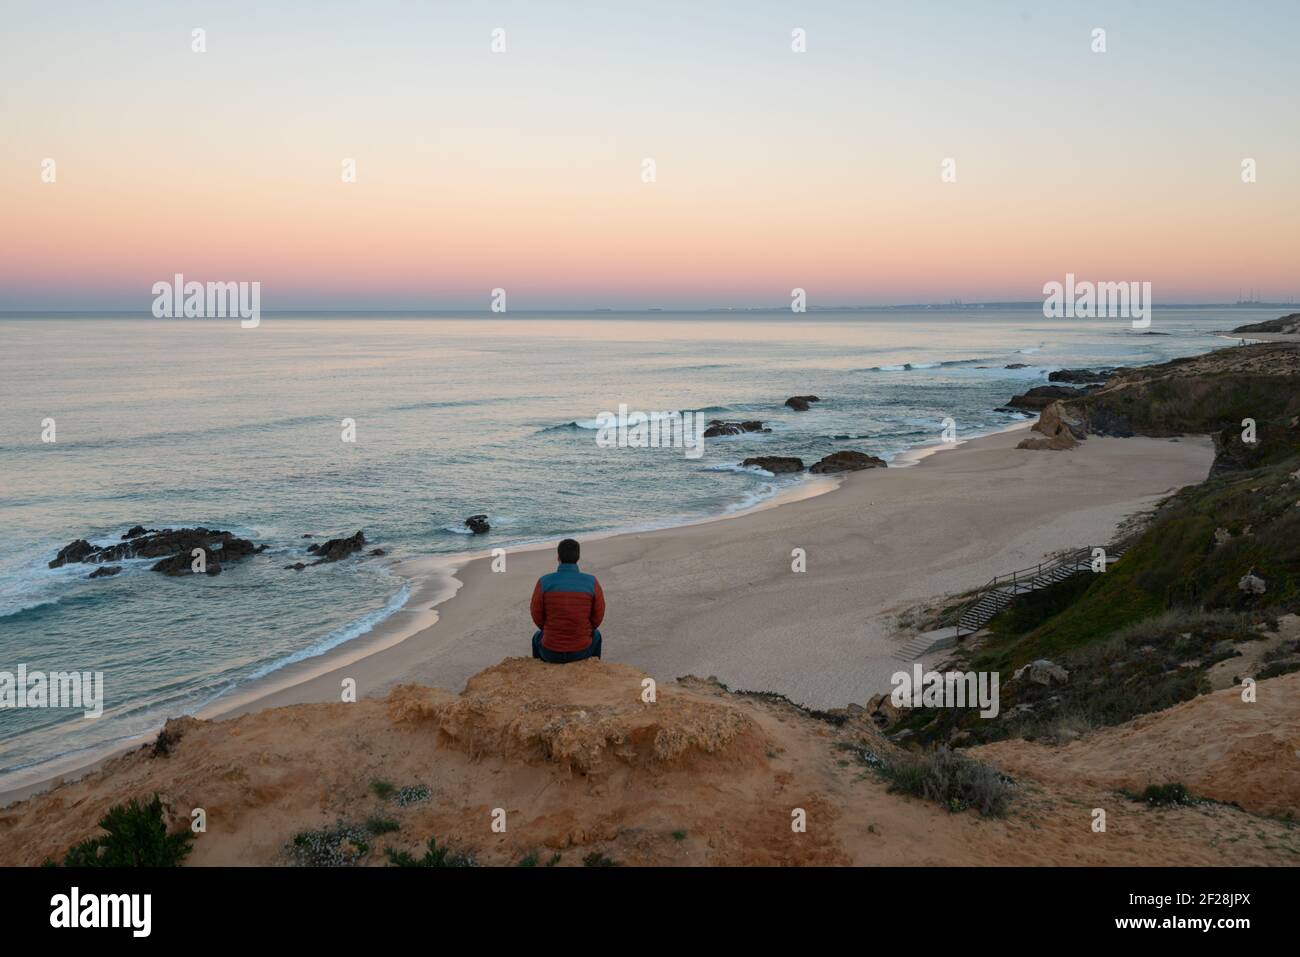 Homme voyant Praia do Malhao vue sur la plage au lever du soleil, au Portugal Banque D'Images